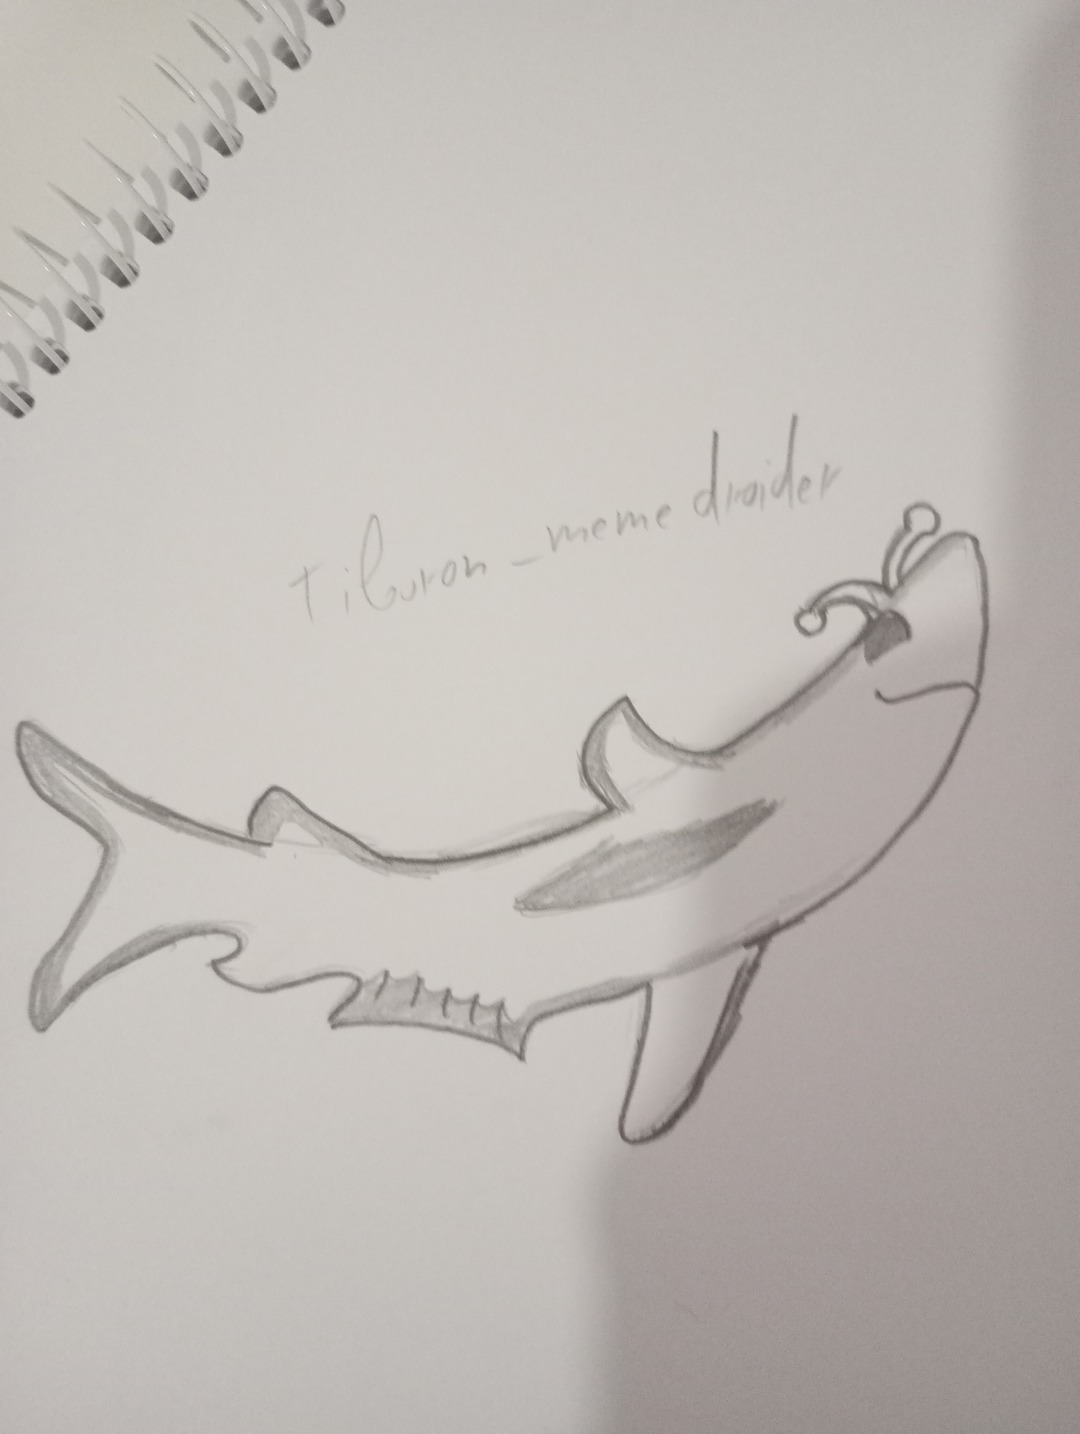 Versión a mano del dibujo de tiburon_memedroider